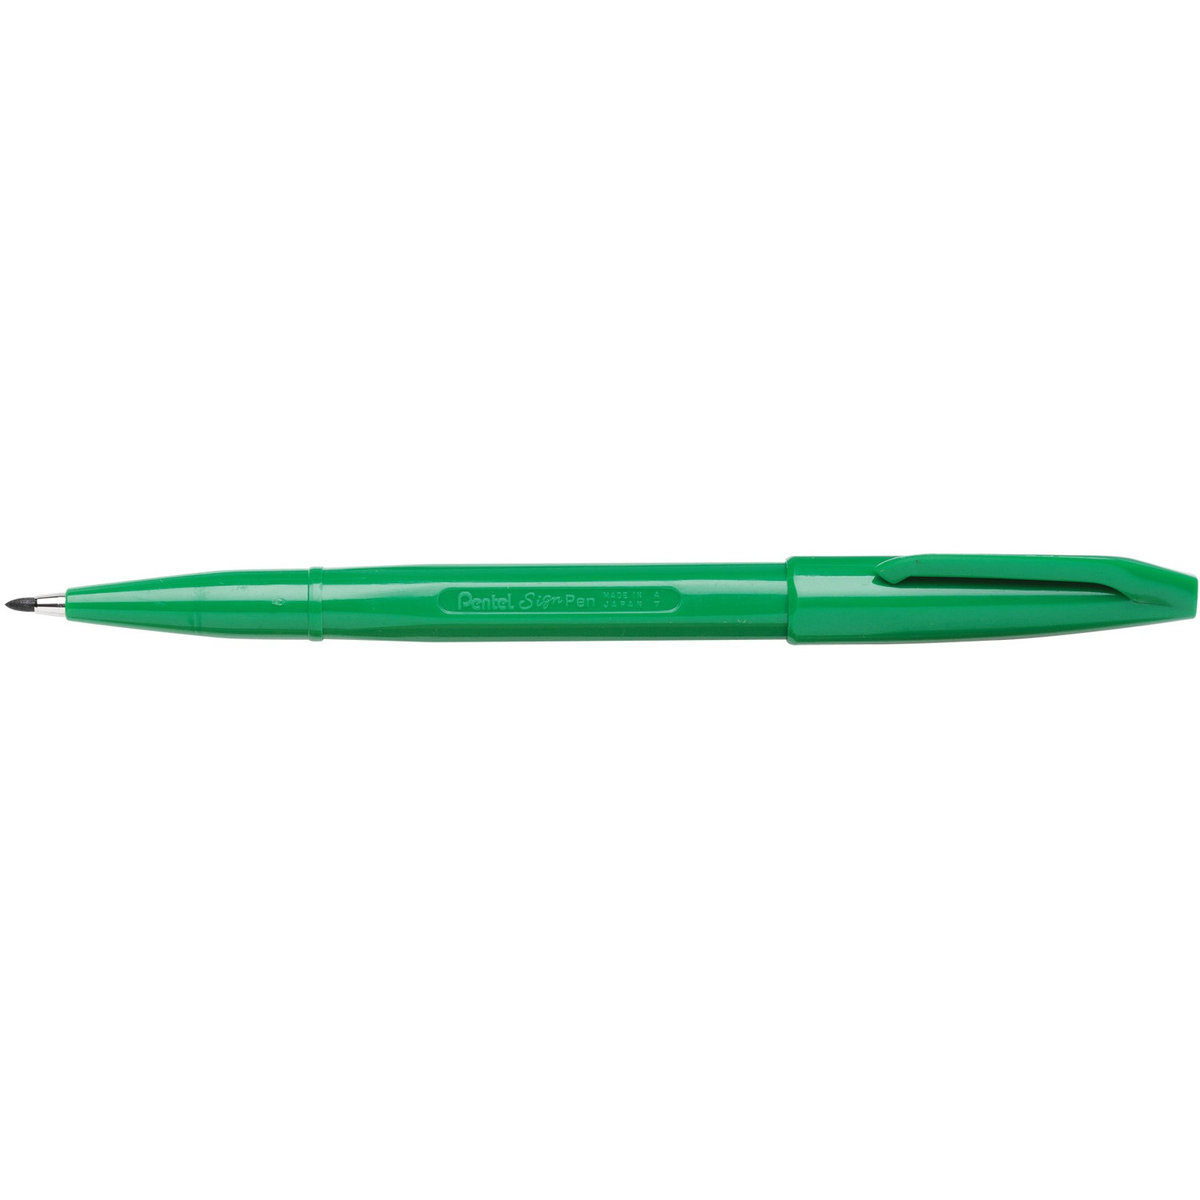 Zdjęcia - Ołówek Pentel Pisak S520 SIGN PEN 2mm zielony  /S520-D/ 